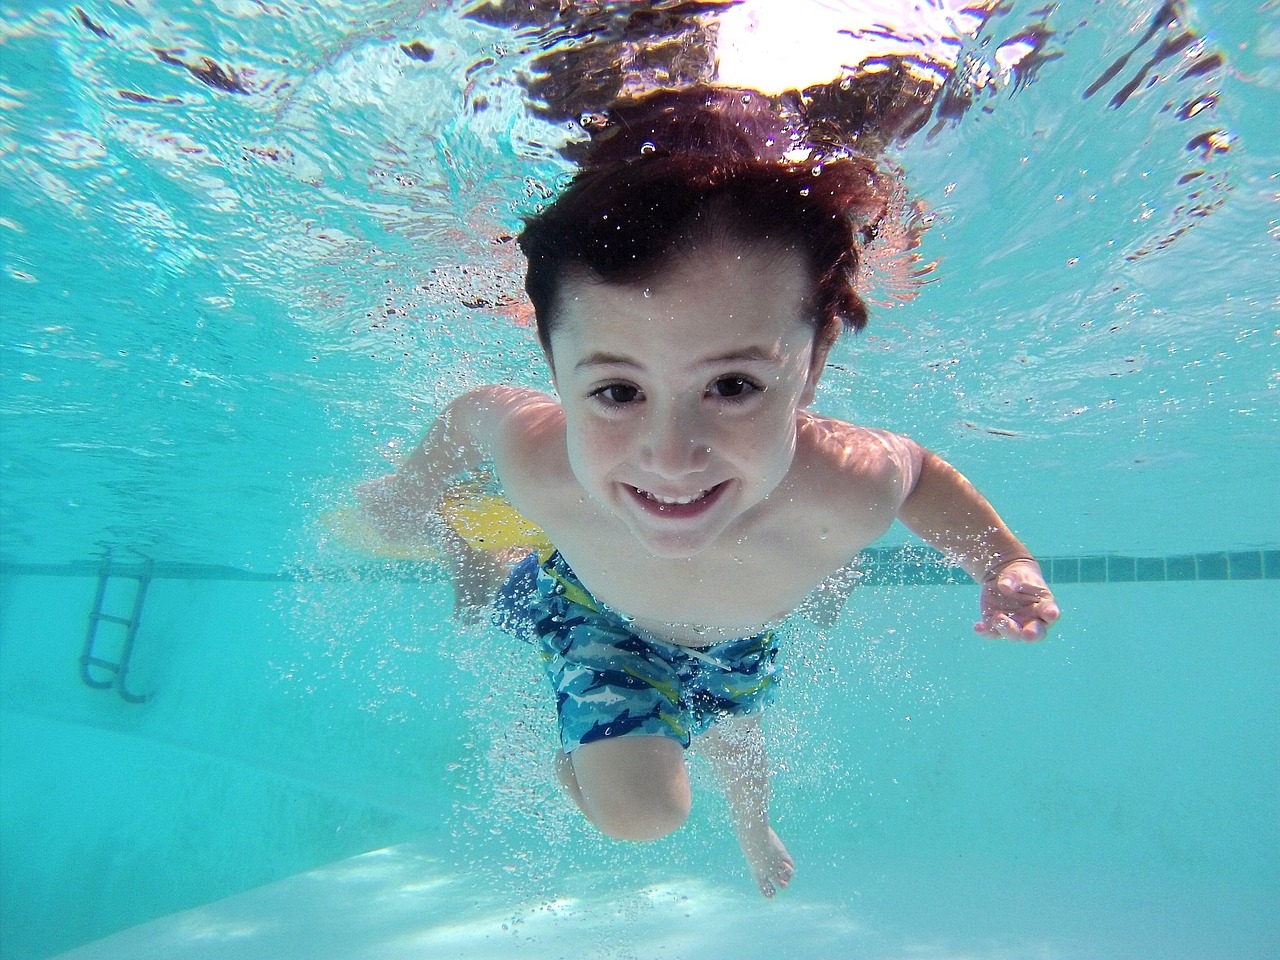 Niños y piscinas: ¿cómo evitar accidentes?